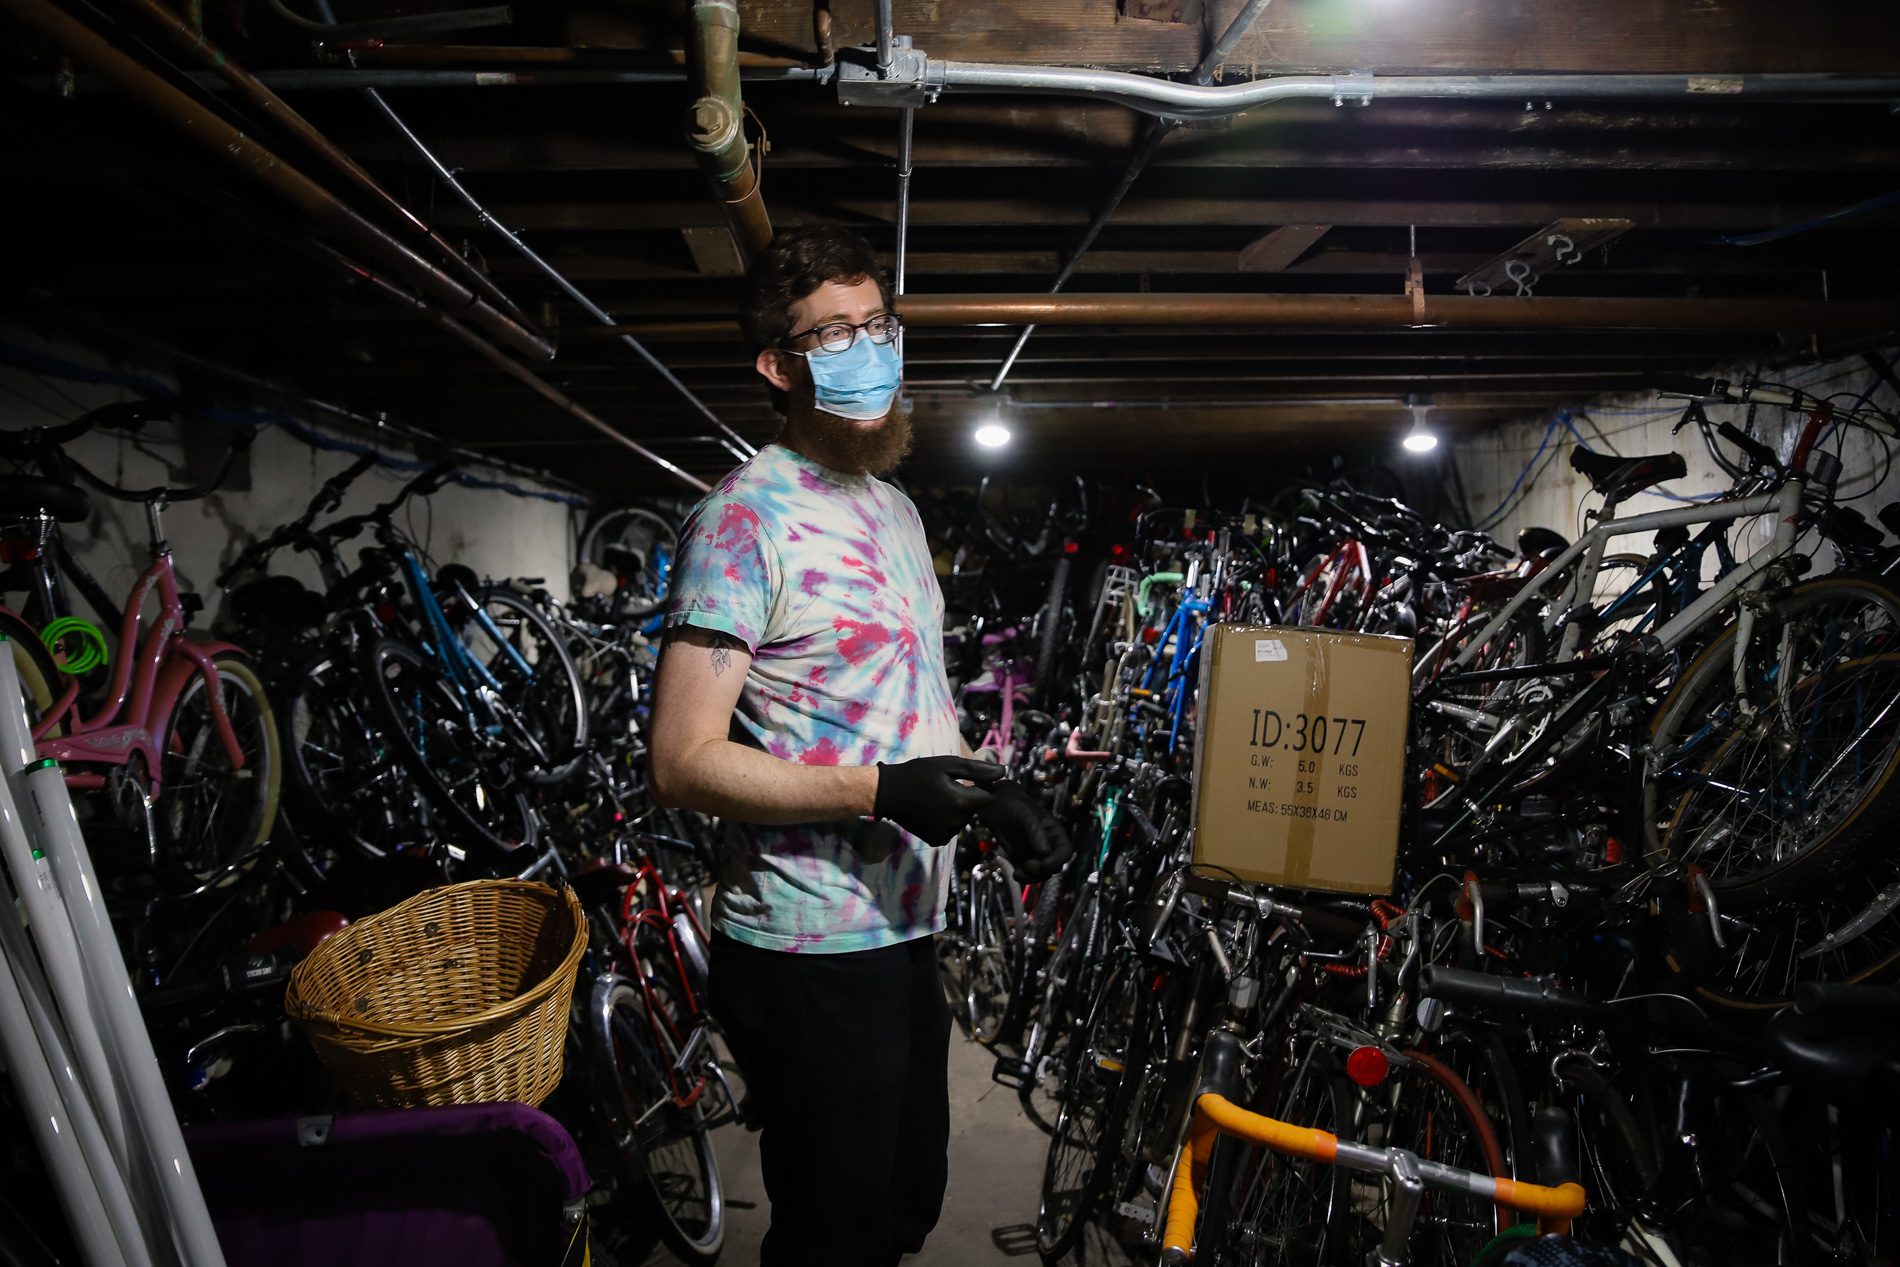 دانا اسمیت احاطه شده توسط دوچرخه انباشته شده تا سقف یک زیرزمین